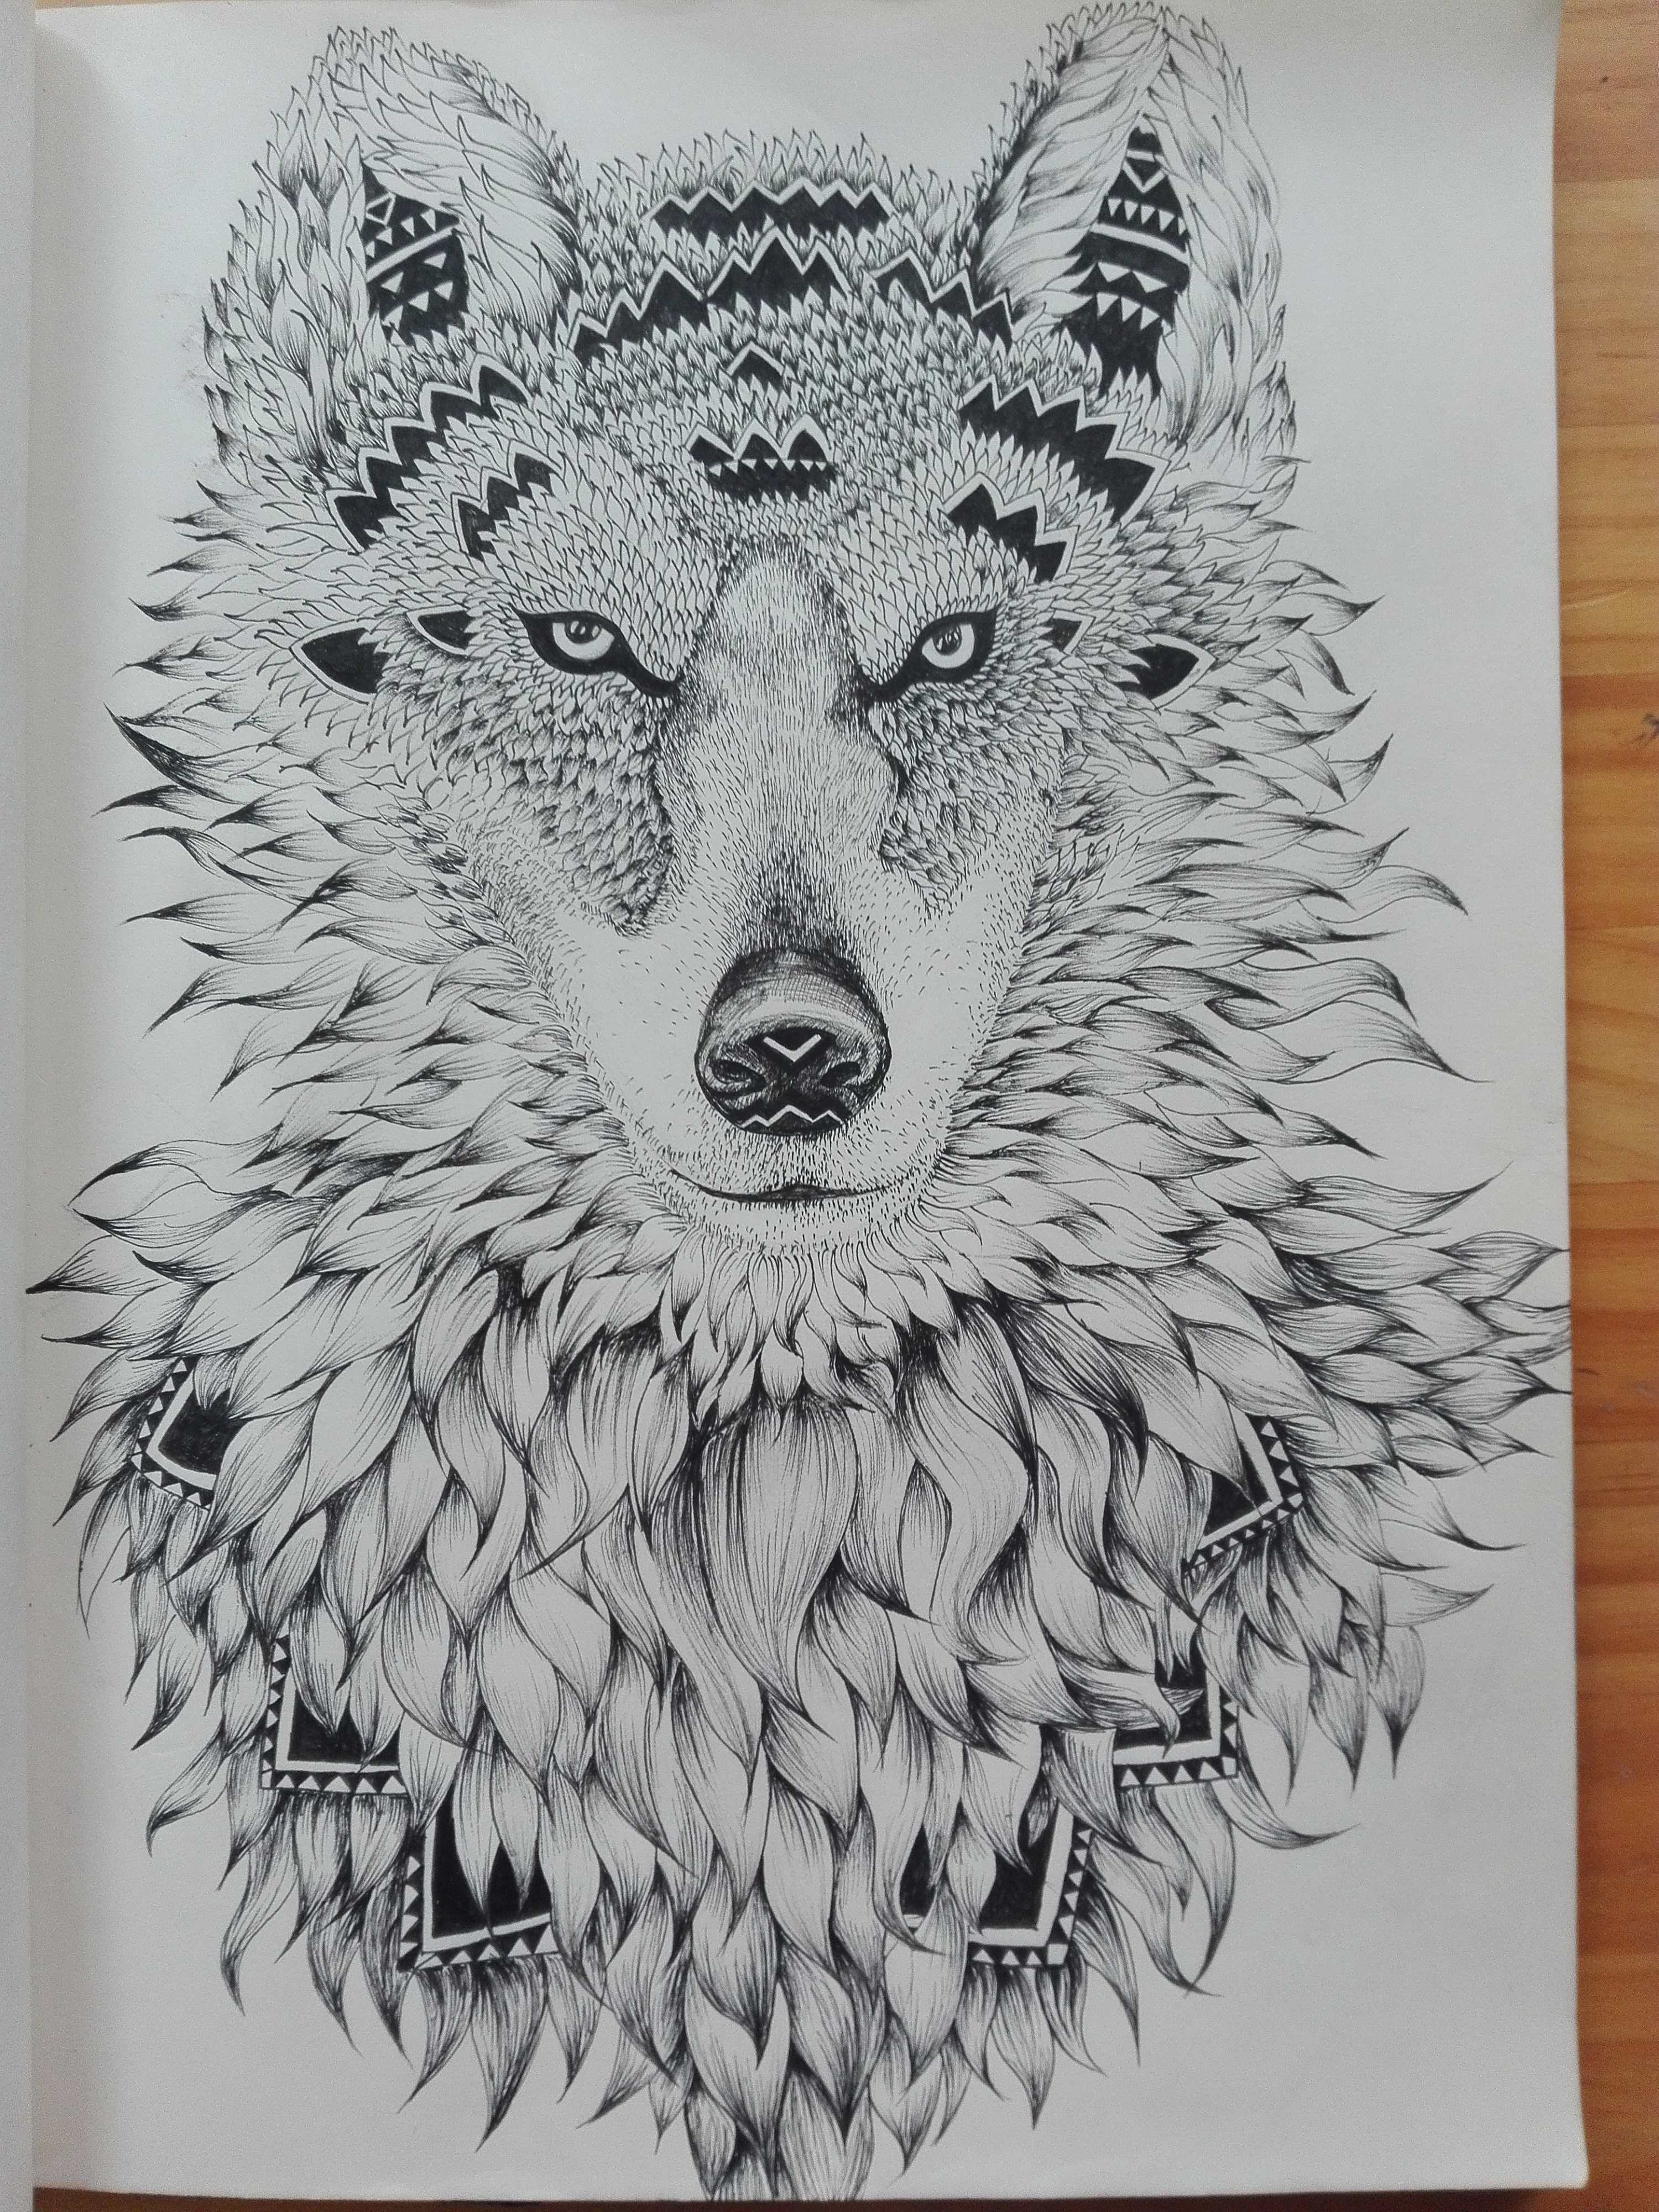 狼 狼群 雪狼 雪天 4K壁纸壁纸(动物静态壁纸) - 静态壁纸下载 - 元气壁纸